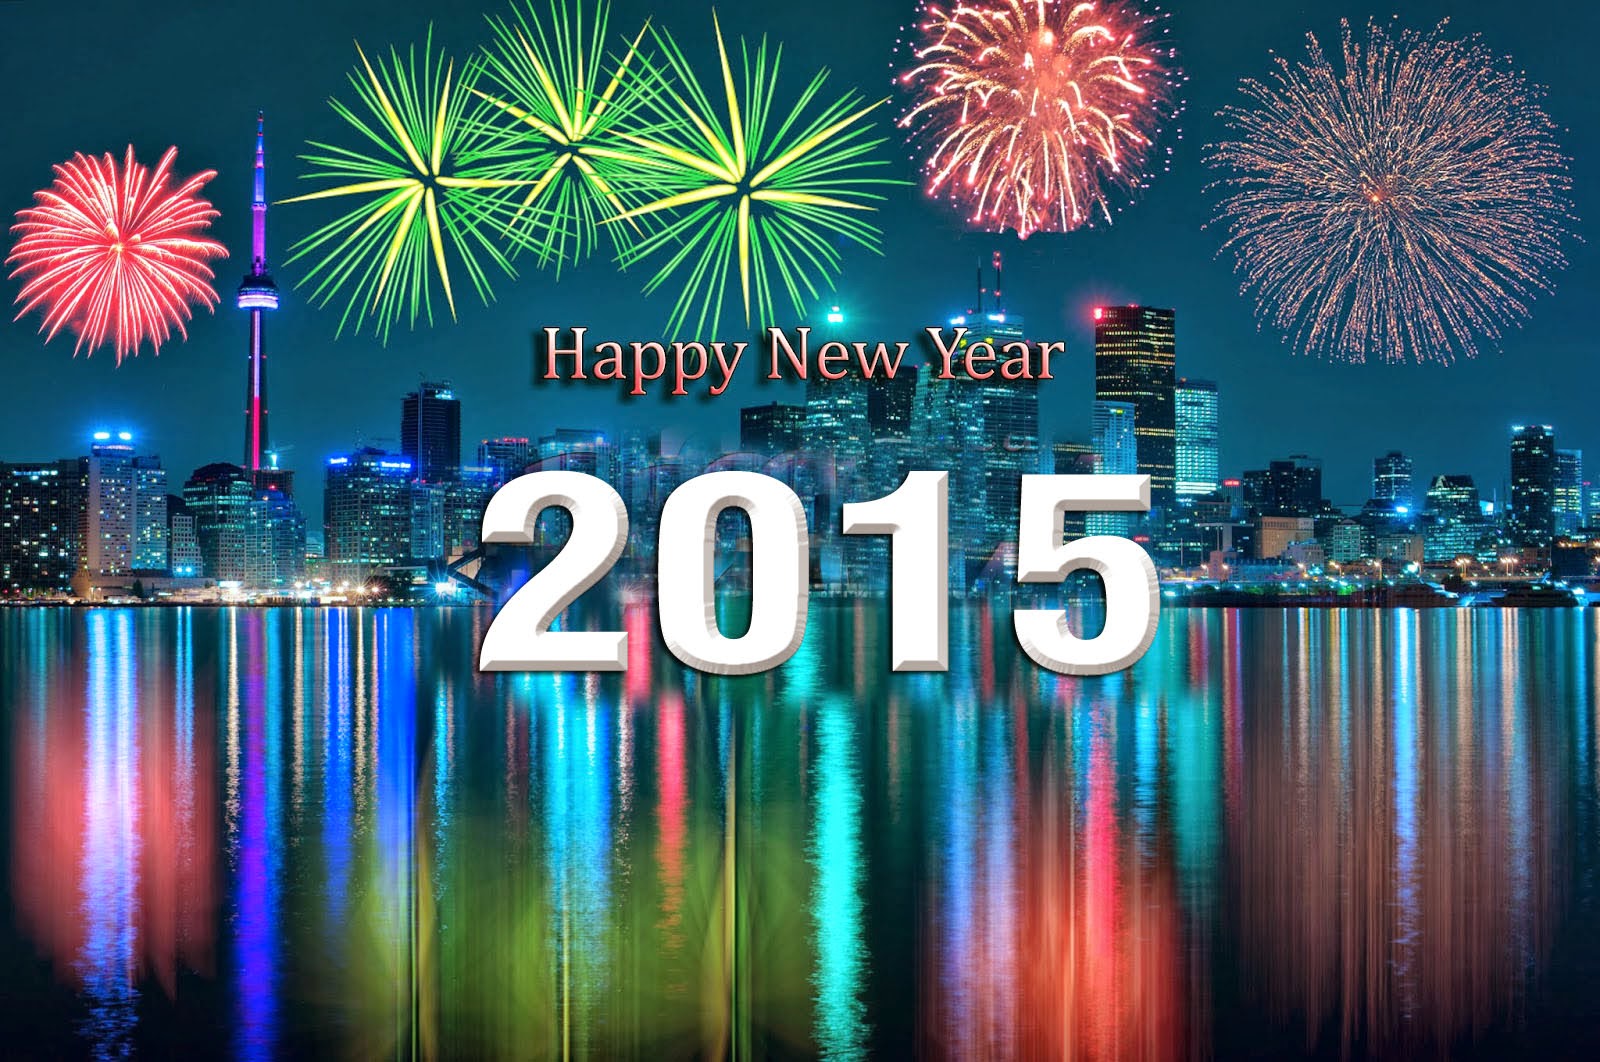 http://1.bp.blogspot.com/-2SbSqpWmuZ0/U6zsM6eH5DI/AAAAAAAAE8w/CVBoWGxaMMM/s1600/Happy+New+Year+hd+wallpaper+2015.jpg